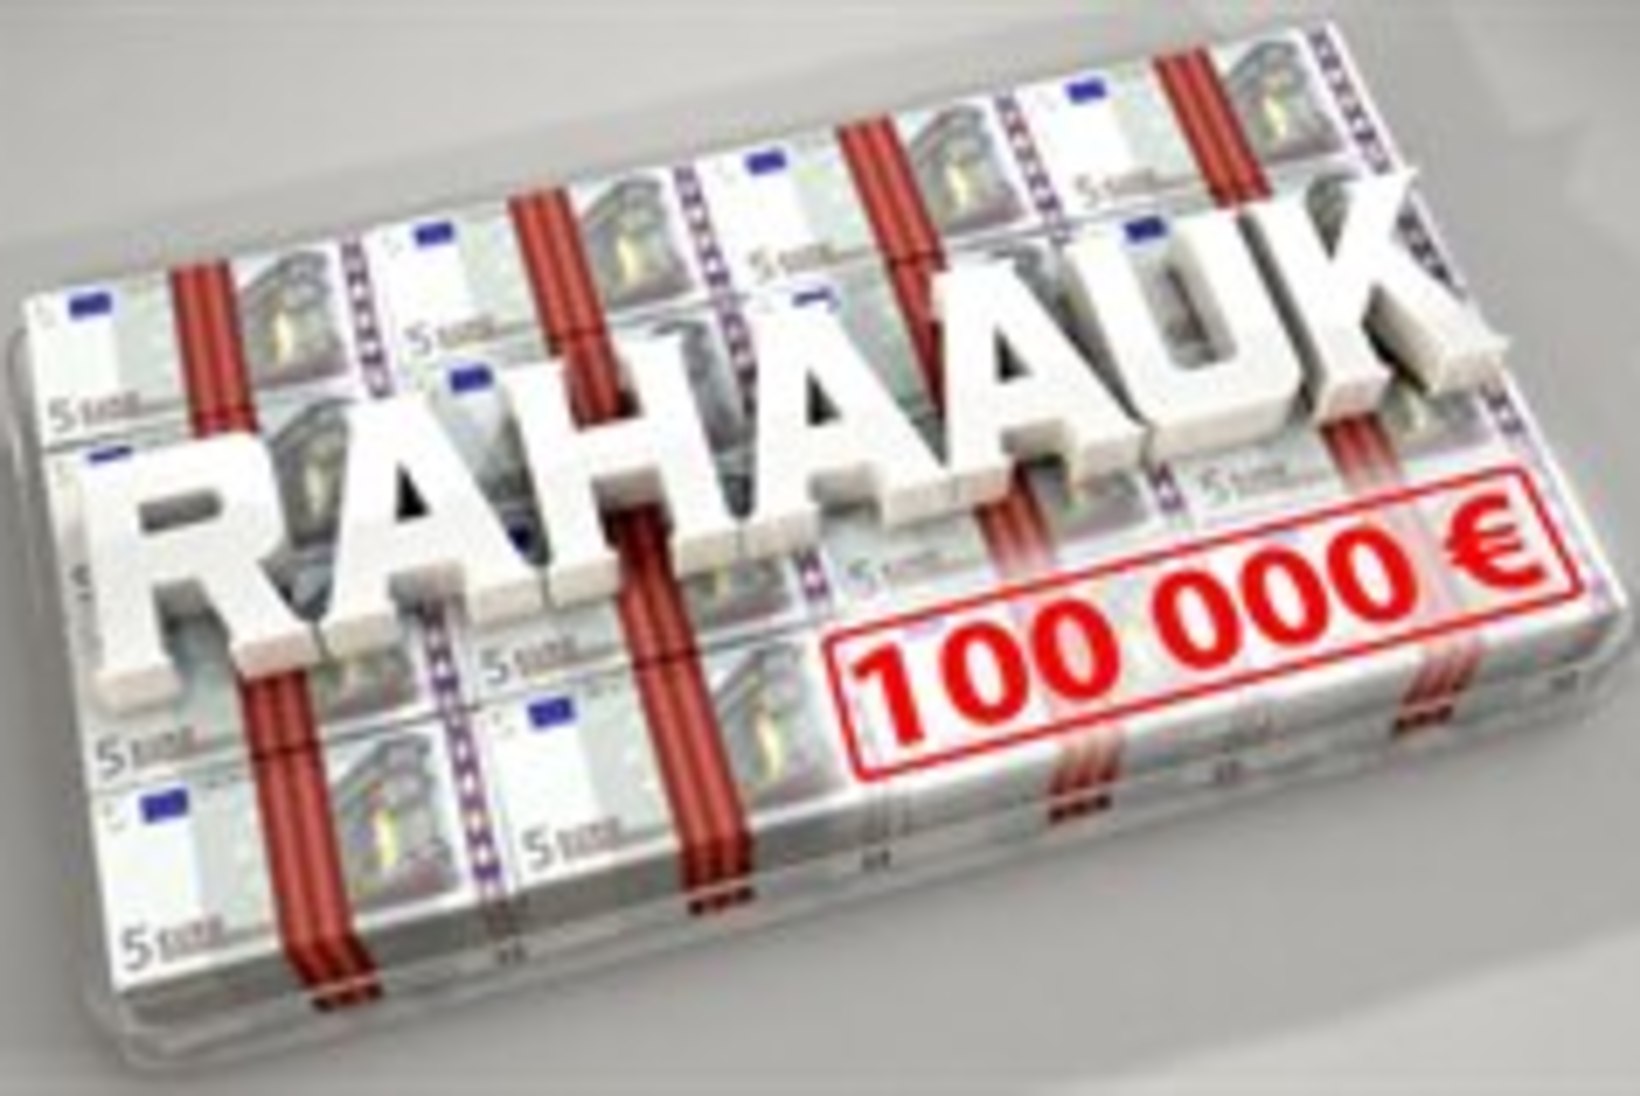 Telemängus "Rahaauk" saab 100 000 eurot kohe kätte